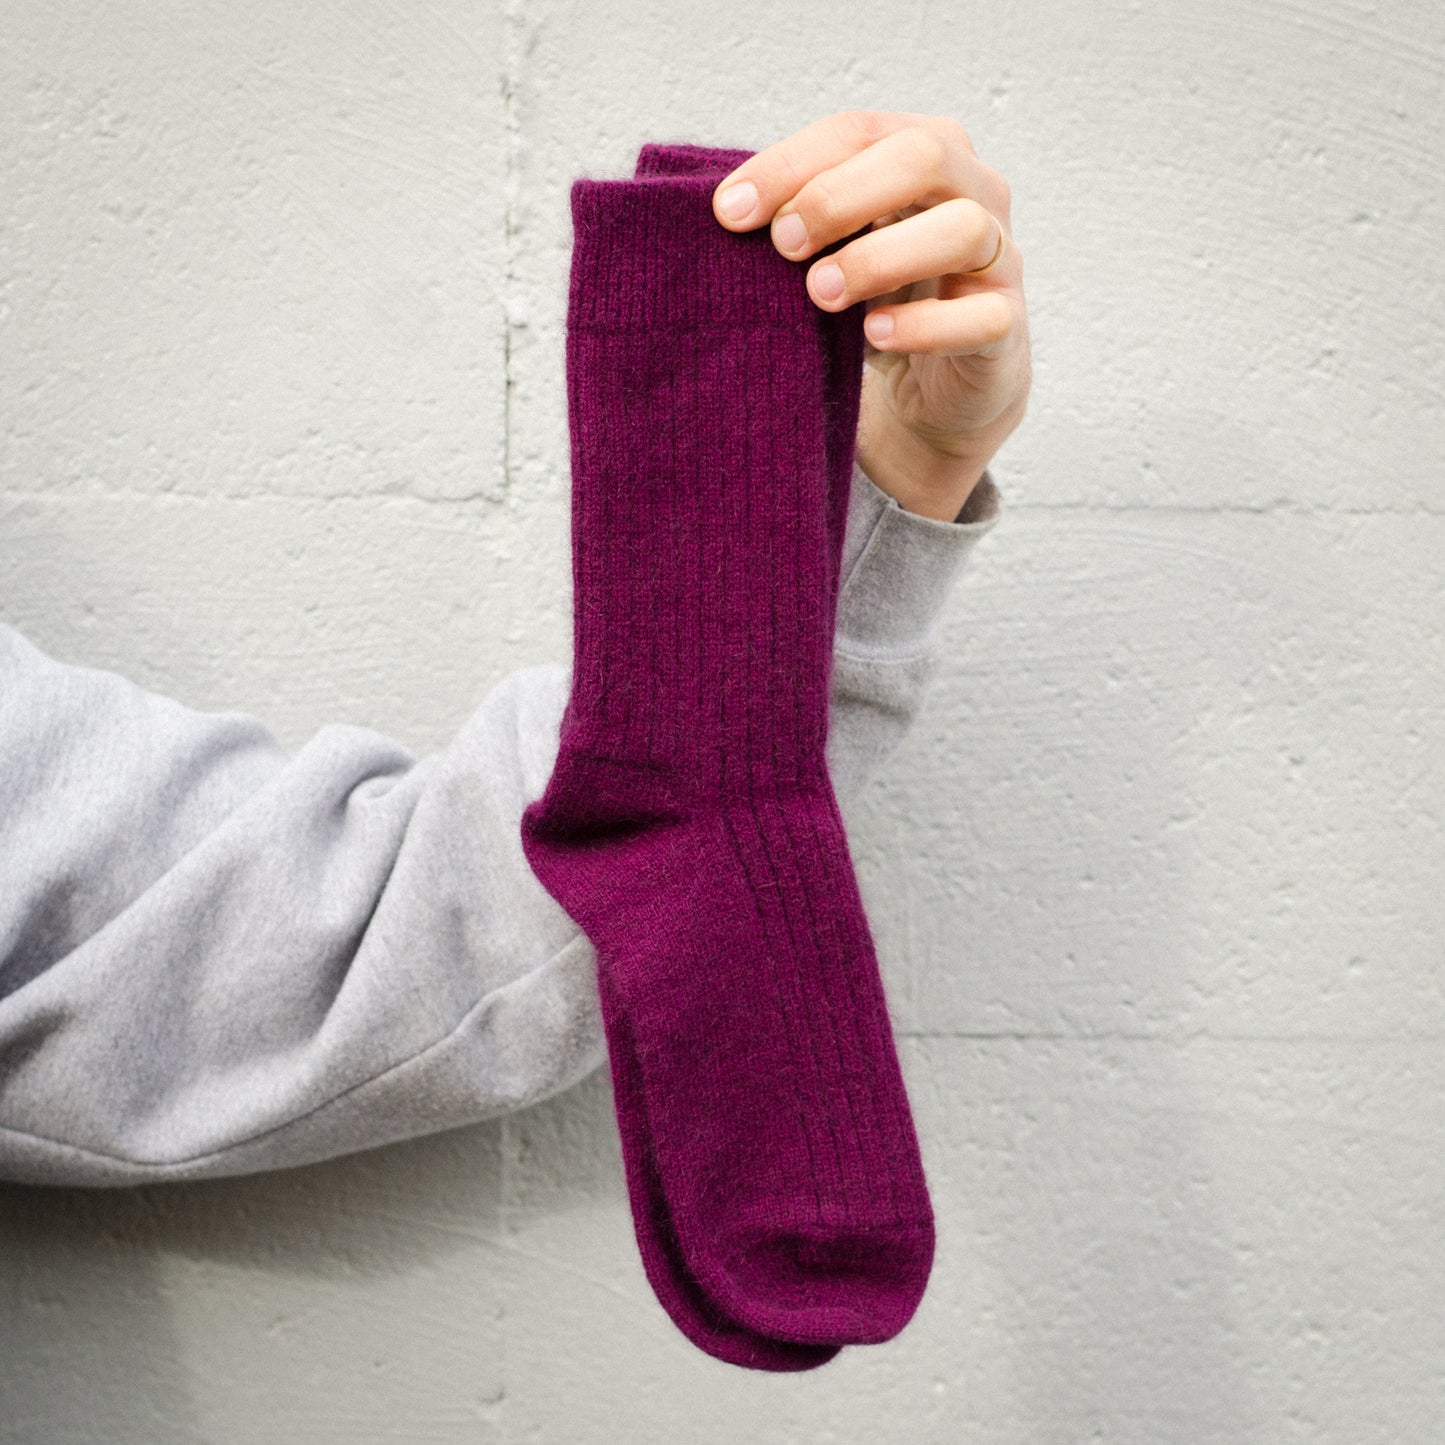 Possum Merino Socks from New Zealand